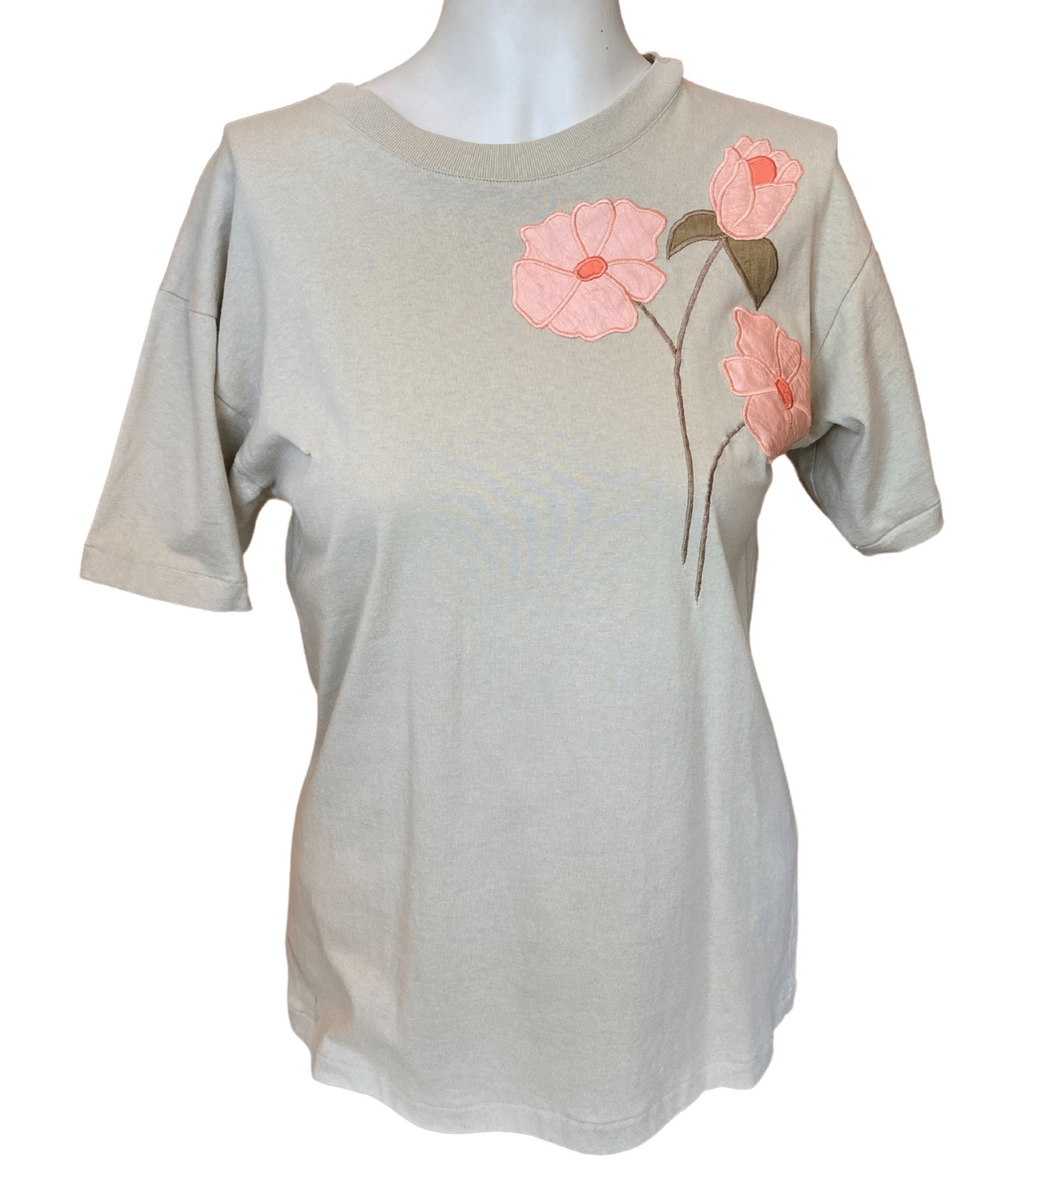 Khaki T-Shirt with appliqué flower details in apricot